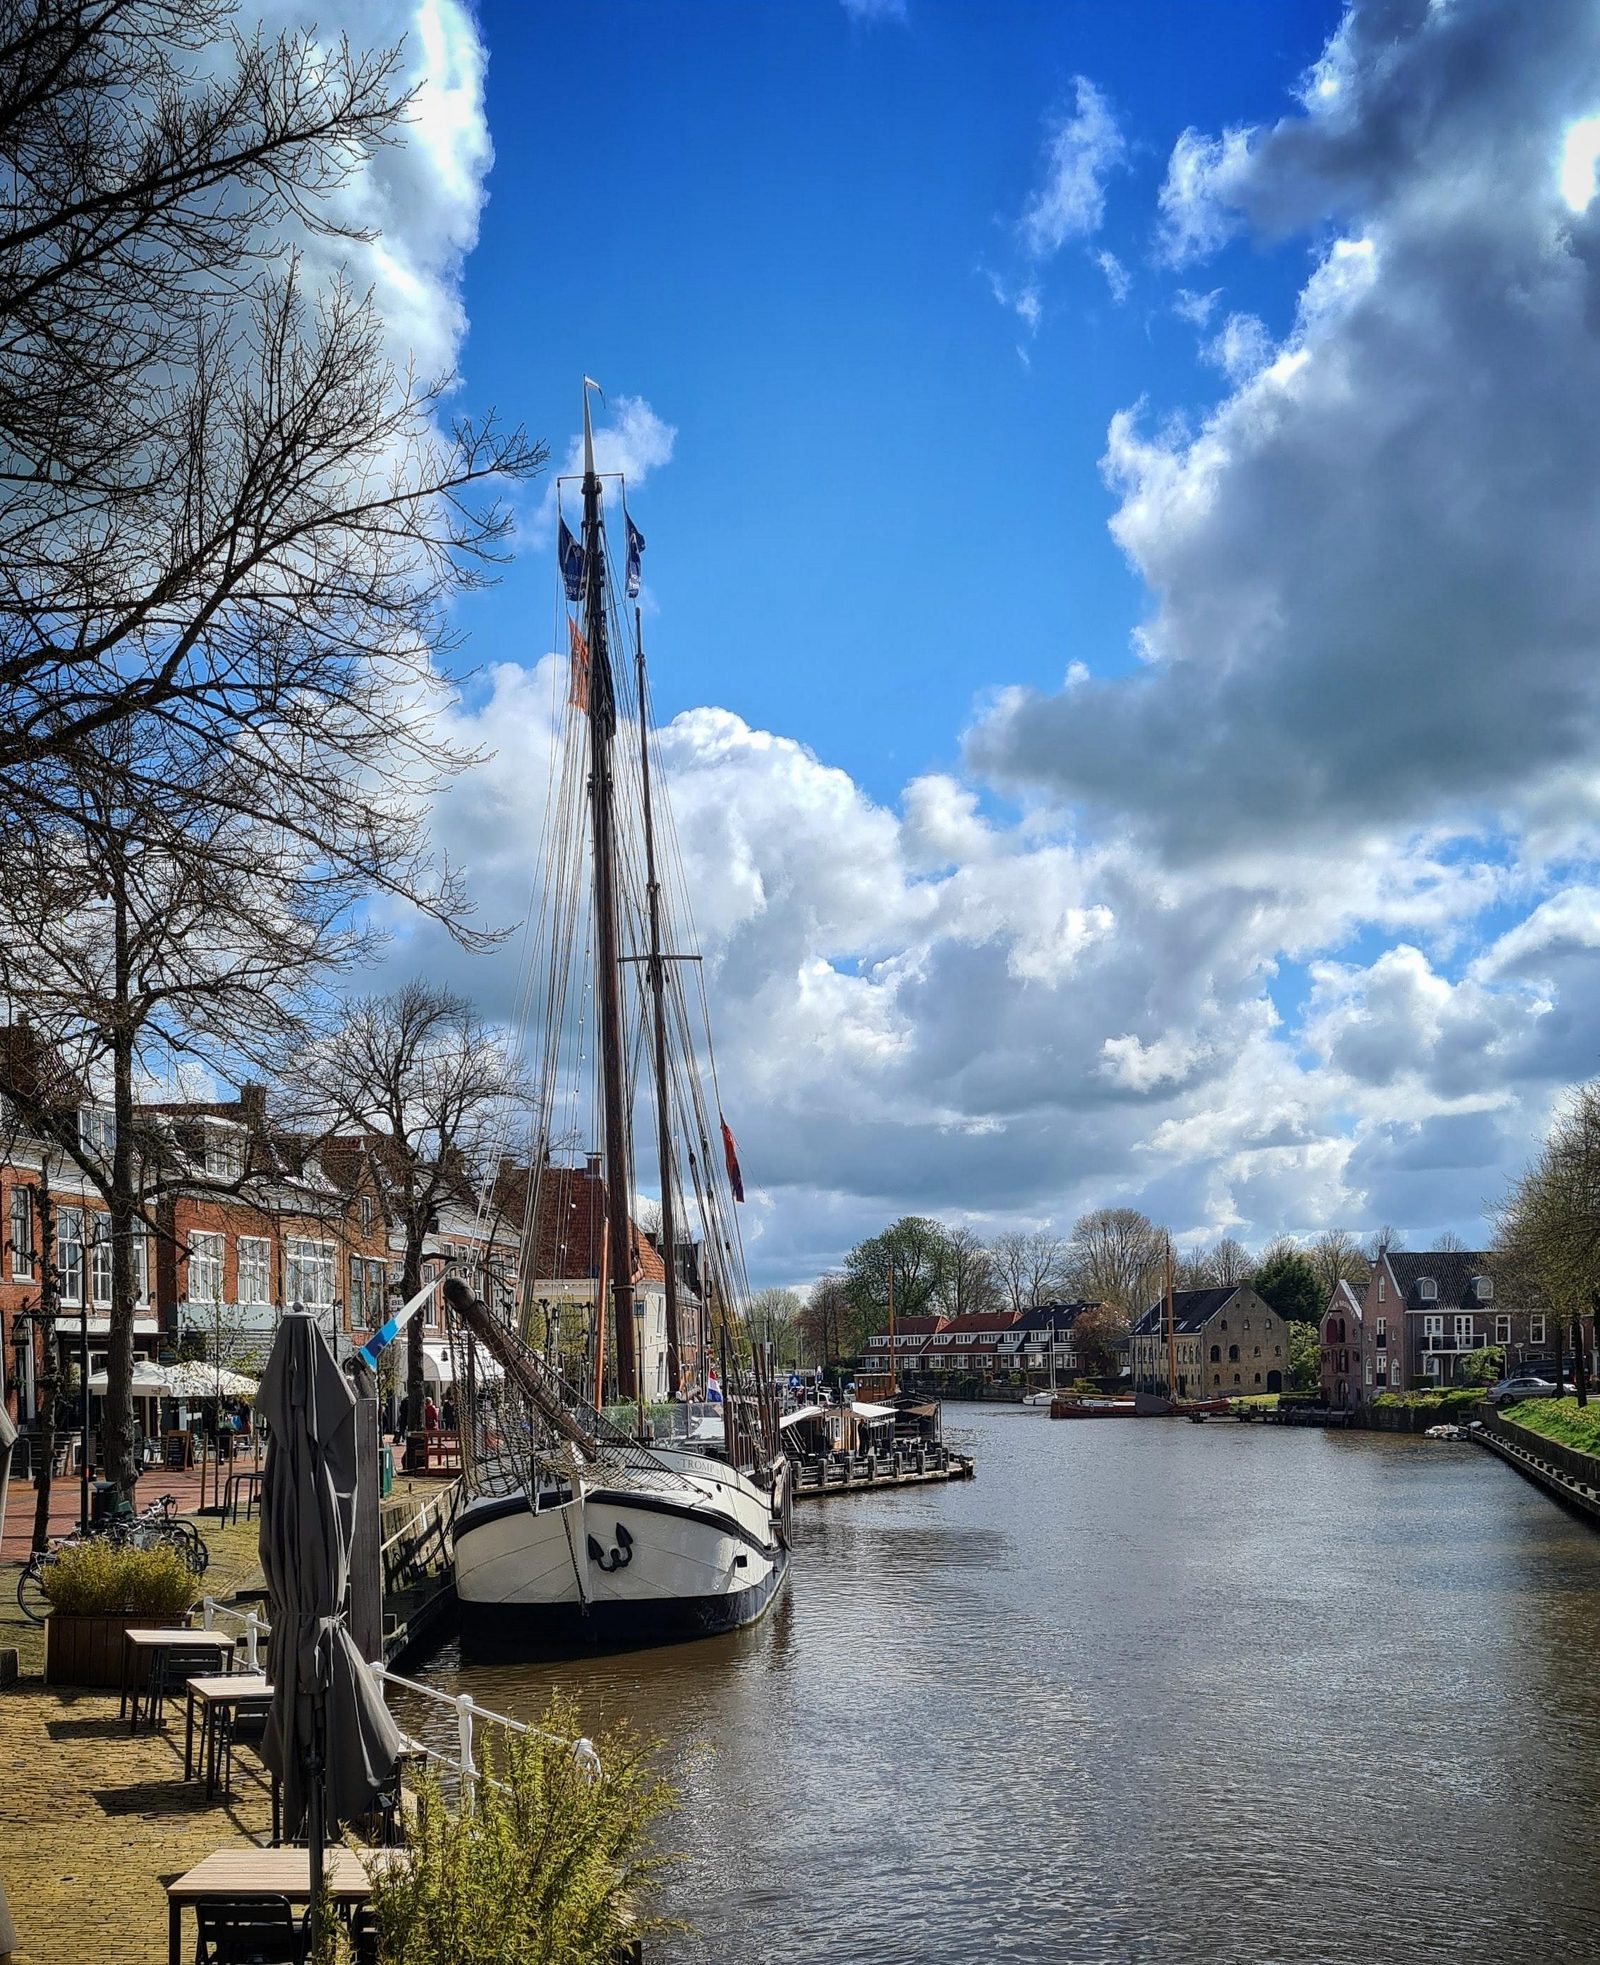 Eleven cities of Friesland